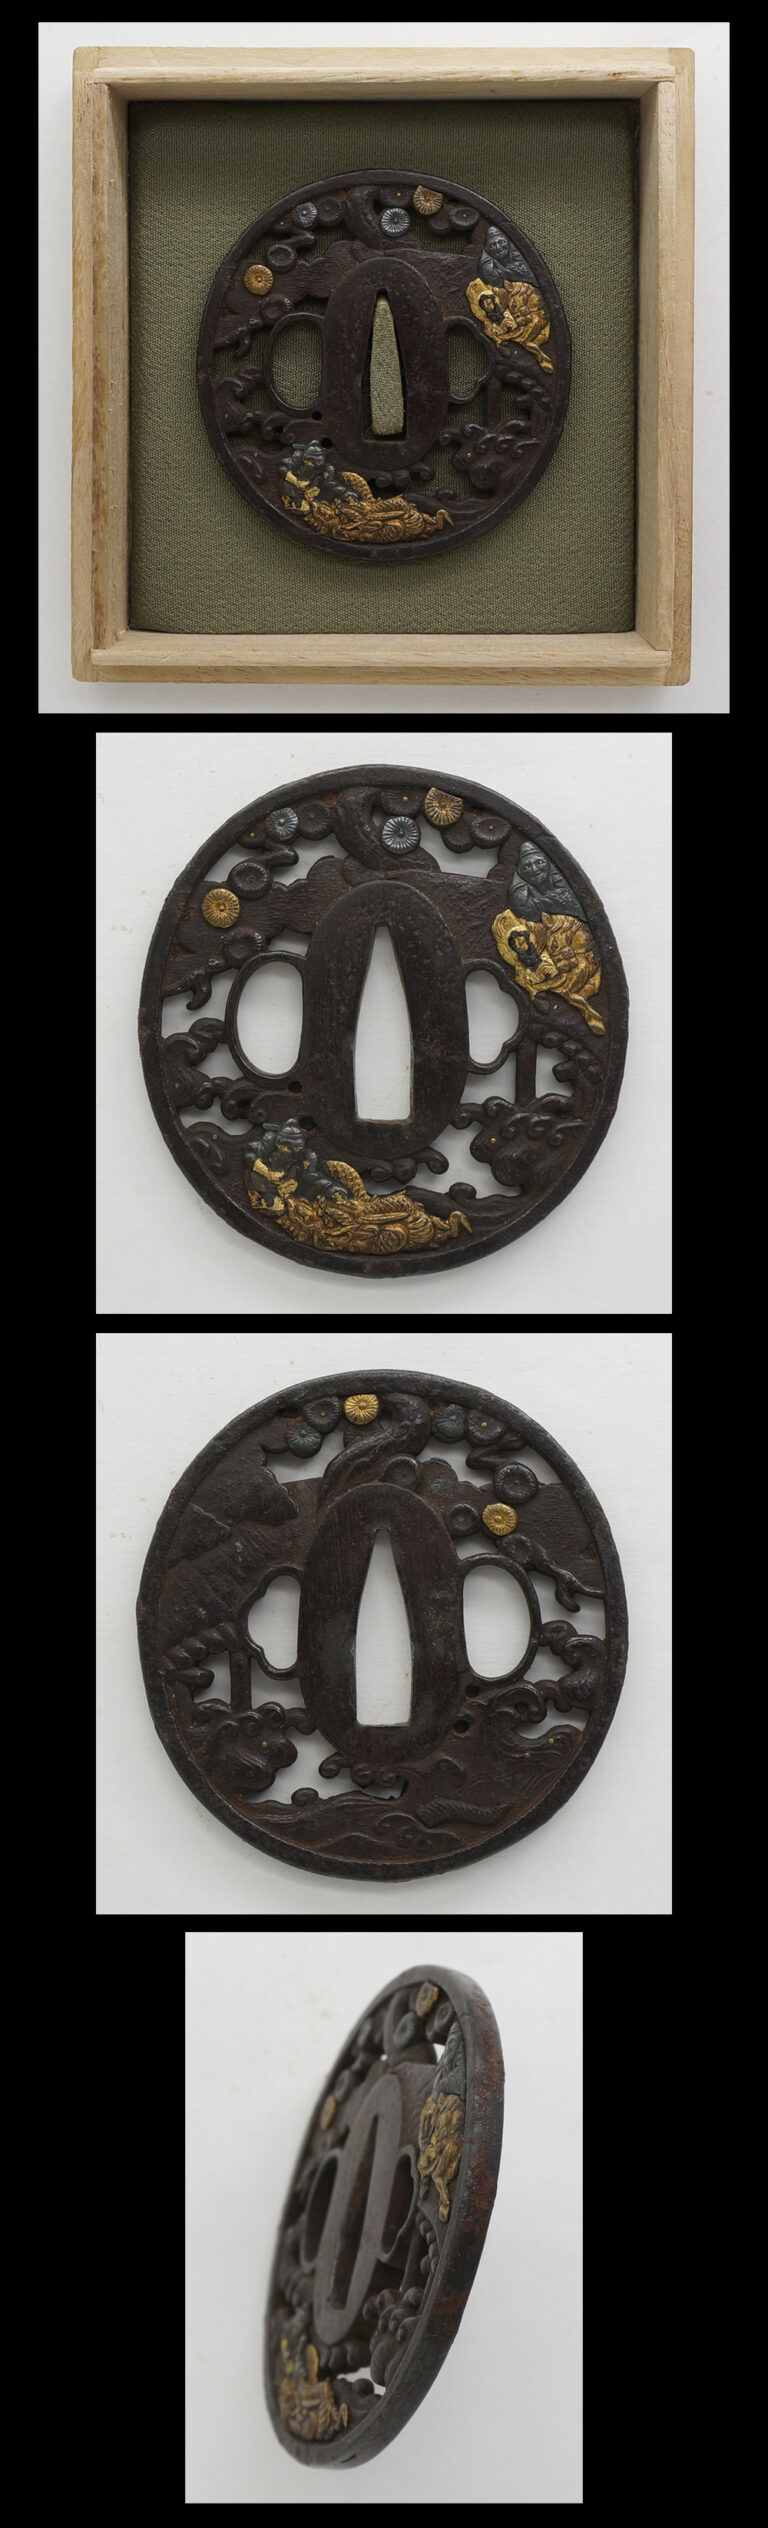 Tsuba : Mumei (Oval shape iron tsuba)